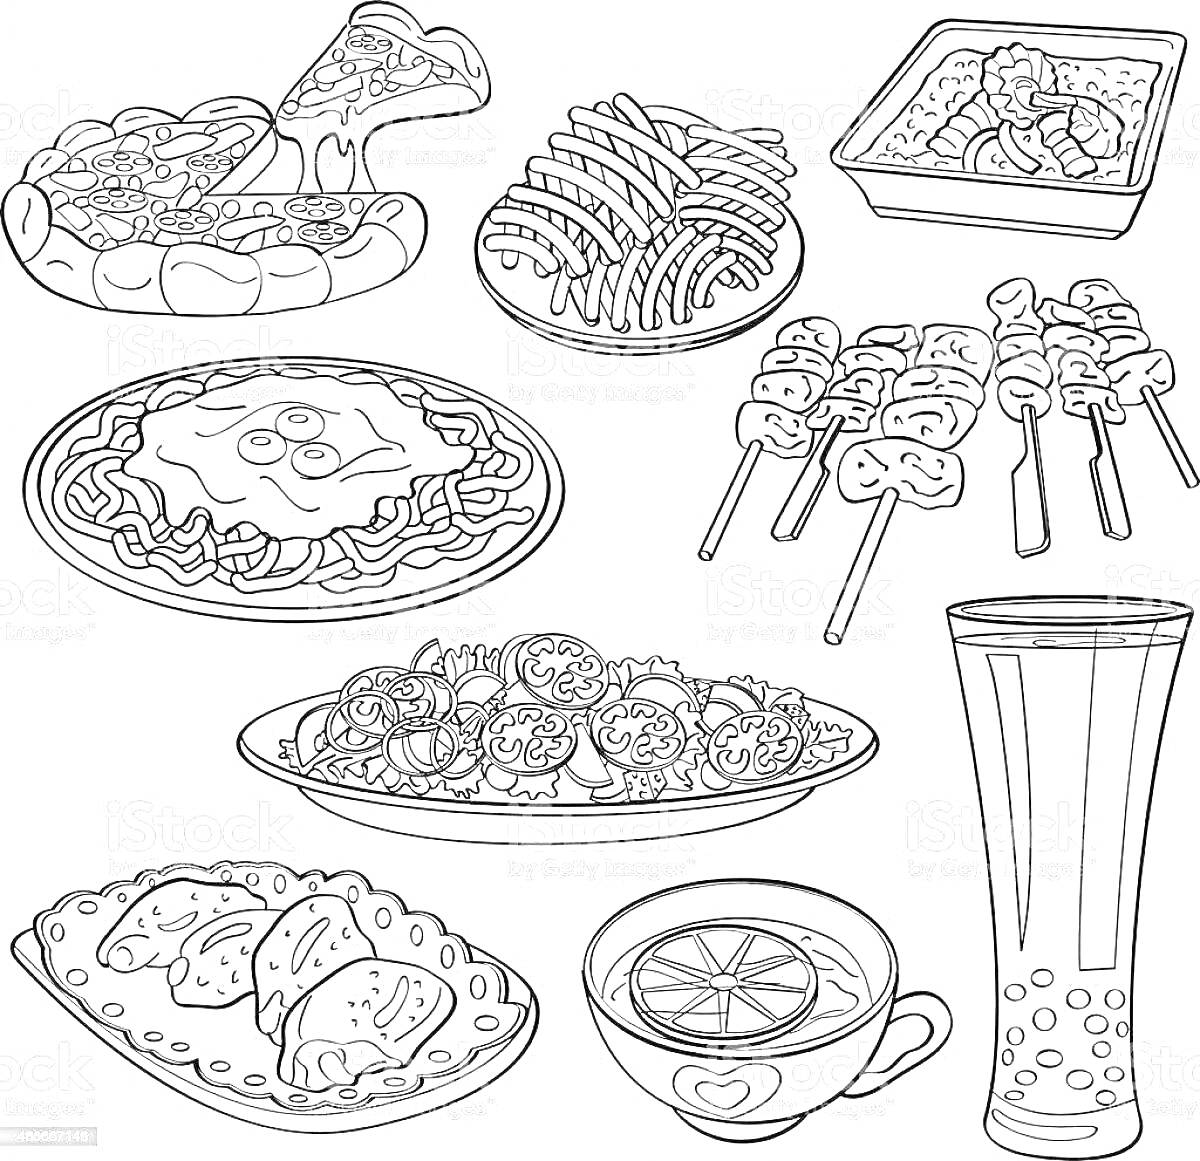 Раскраска Пицца, суши, бенто, лапша с жареным яйцом и овощами, шашлыки, рахат-лукум, чай, боба чай, вареники